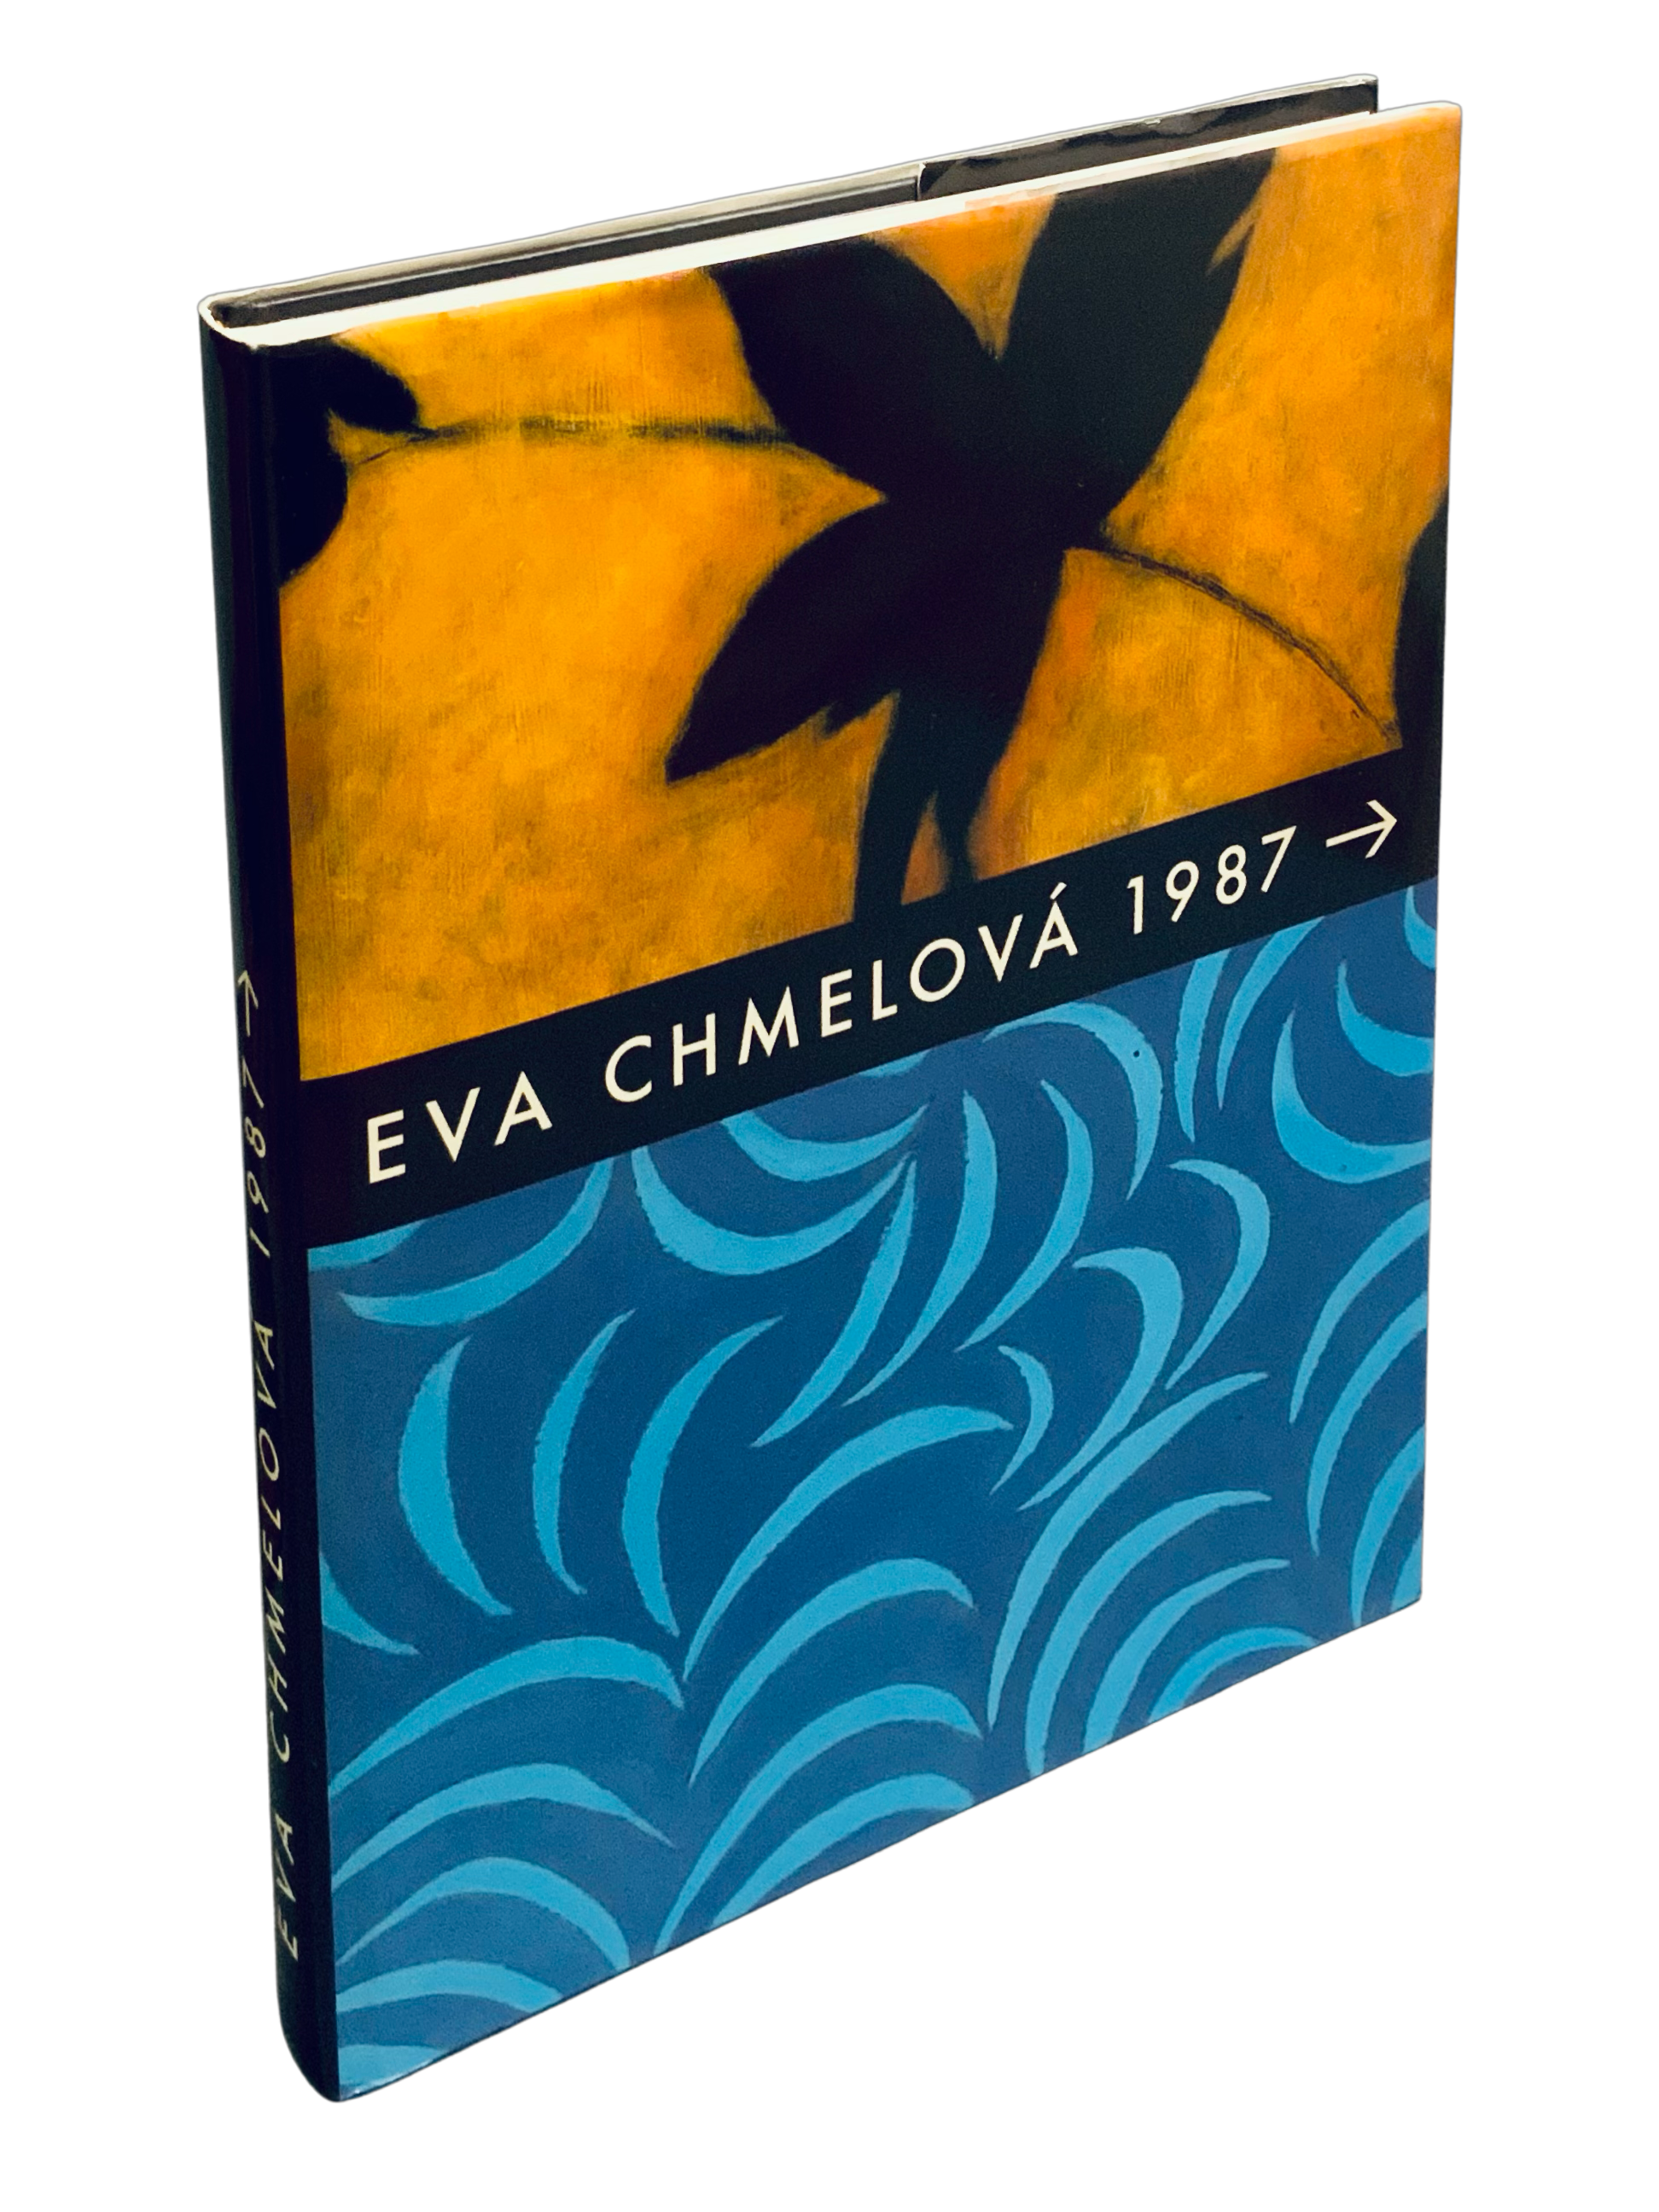 Eva Chmelová 1987 a dál